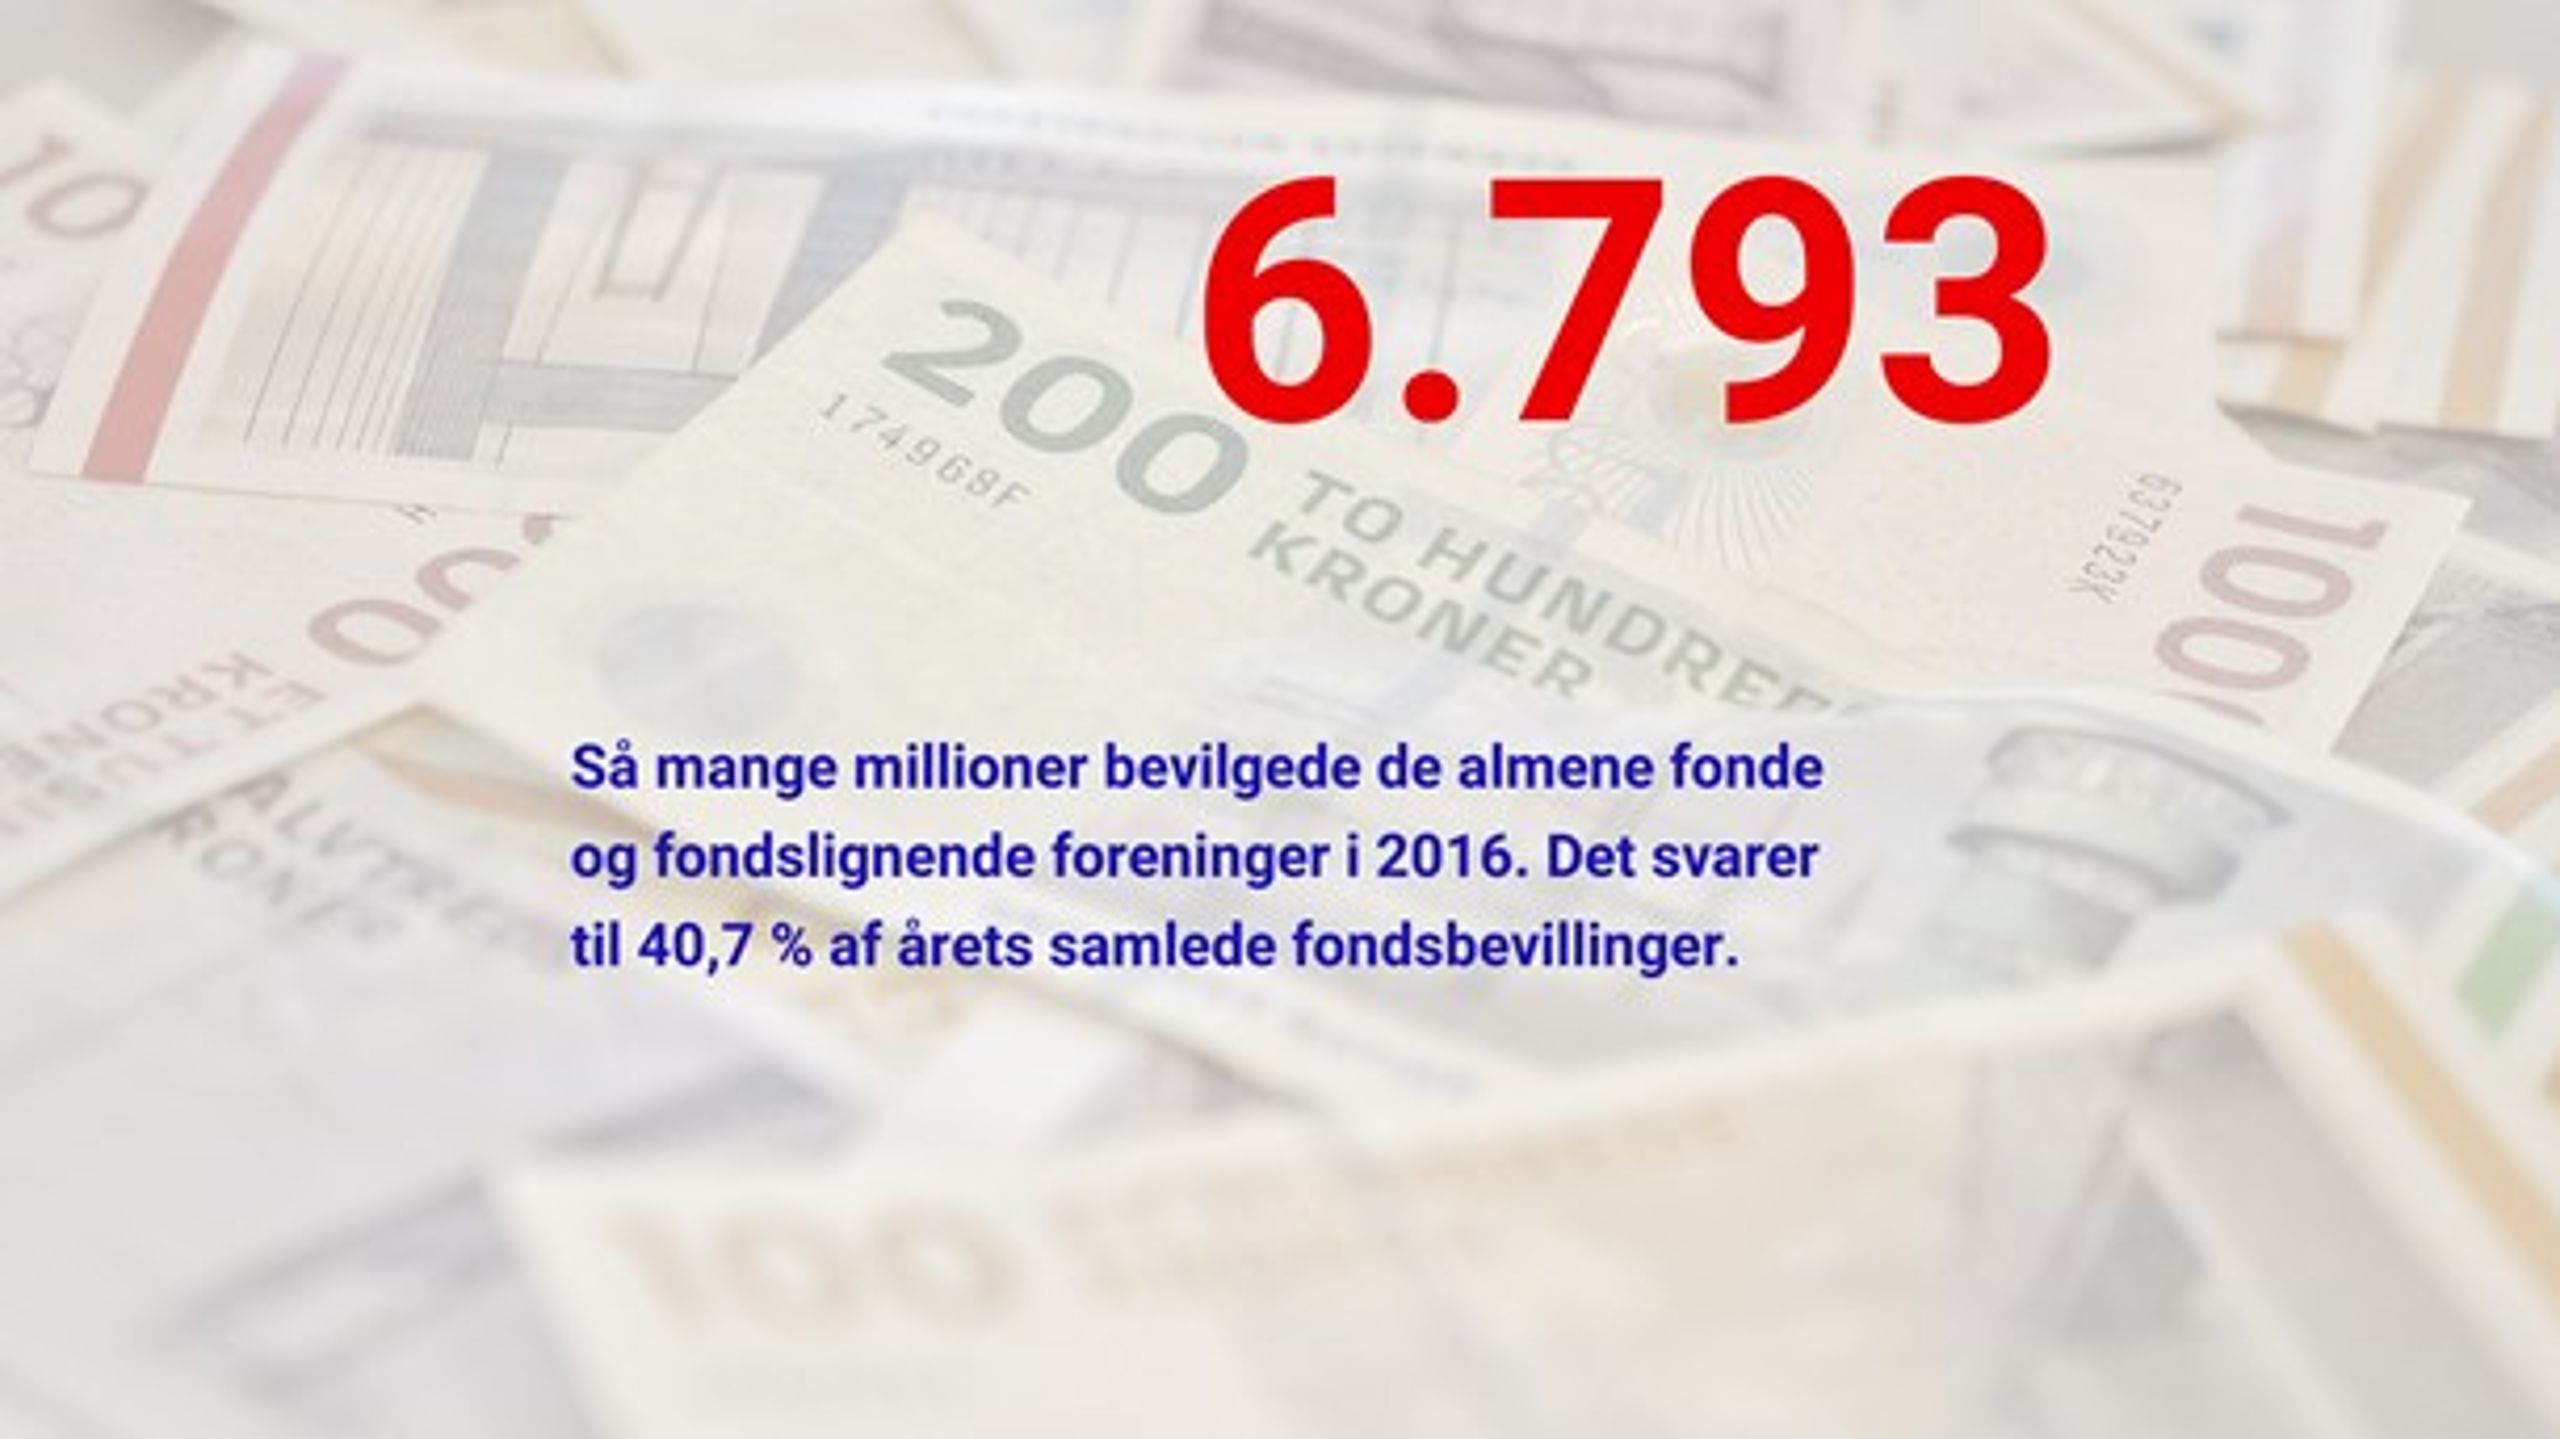 Tallet stammer fra Danmarks Statistiks årlige rapport om fonde, som er baseret på spørgeskemaundersøgelser blandt private fonde.